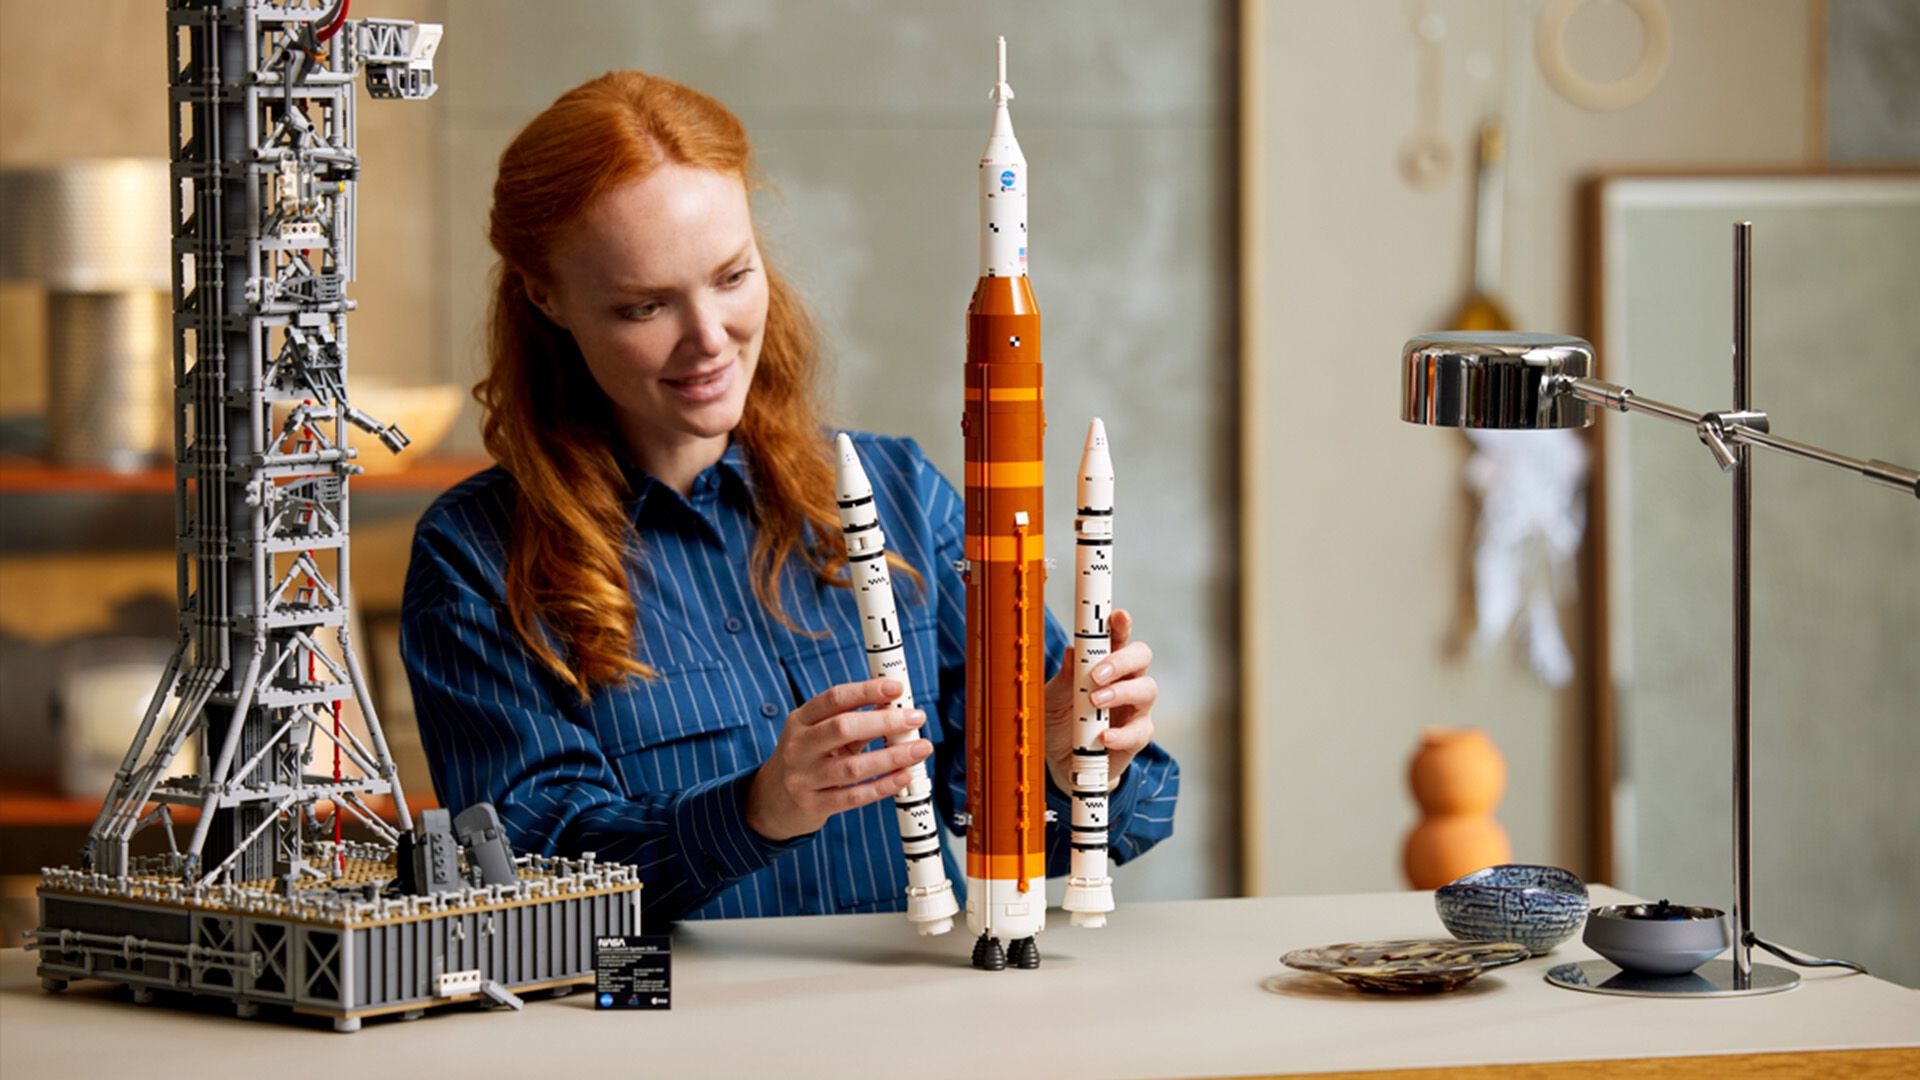 【大人レゴ】NASAのロケットや発射台を再現したセットが発売。宇宙船オリオンはロケット内に搭載可能、太陽光パネルを広げてスタンドに飾ることも